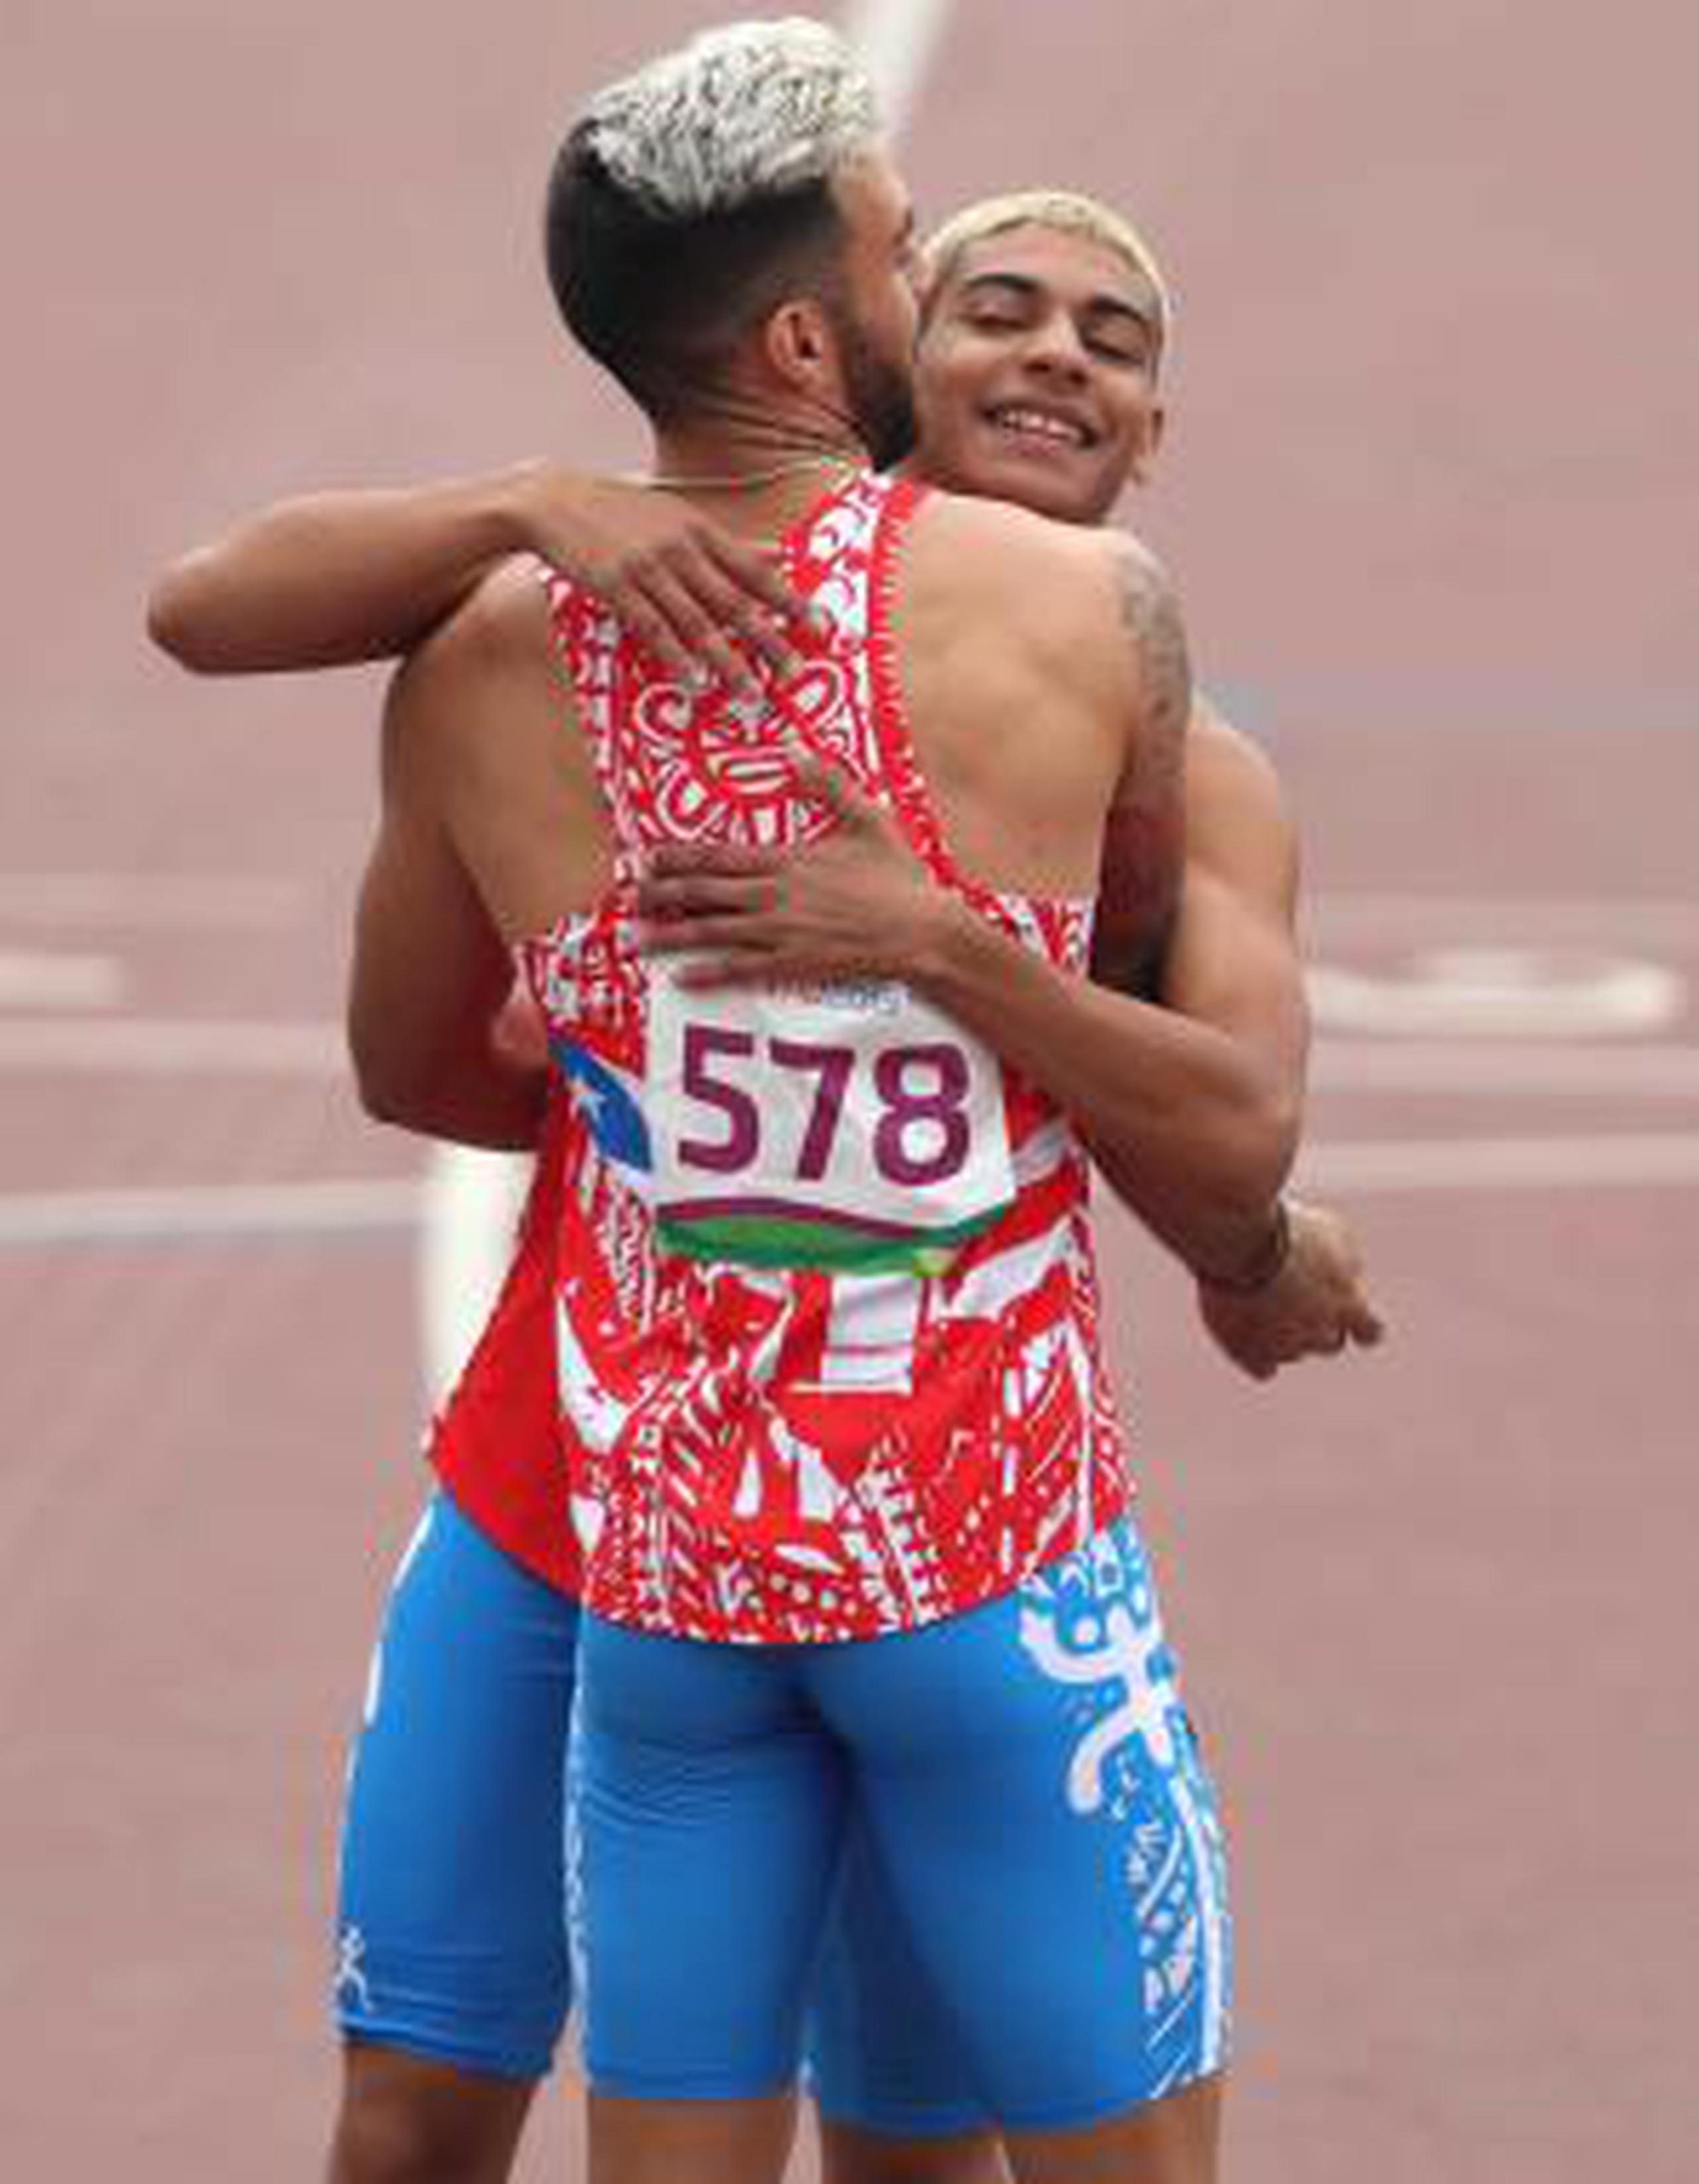 Ryan Sánchez, de frente, logró en Lima su clasificación a Tokio 2020 en el evento de los 800 metros. Wesley Vázquez, quien lo abraza en la foto, ya había clasificado previamente a las Olimpiadas. (Enviado especial / juan.martinez@gfrmedia.com)